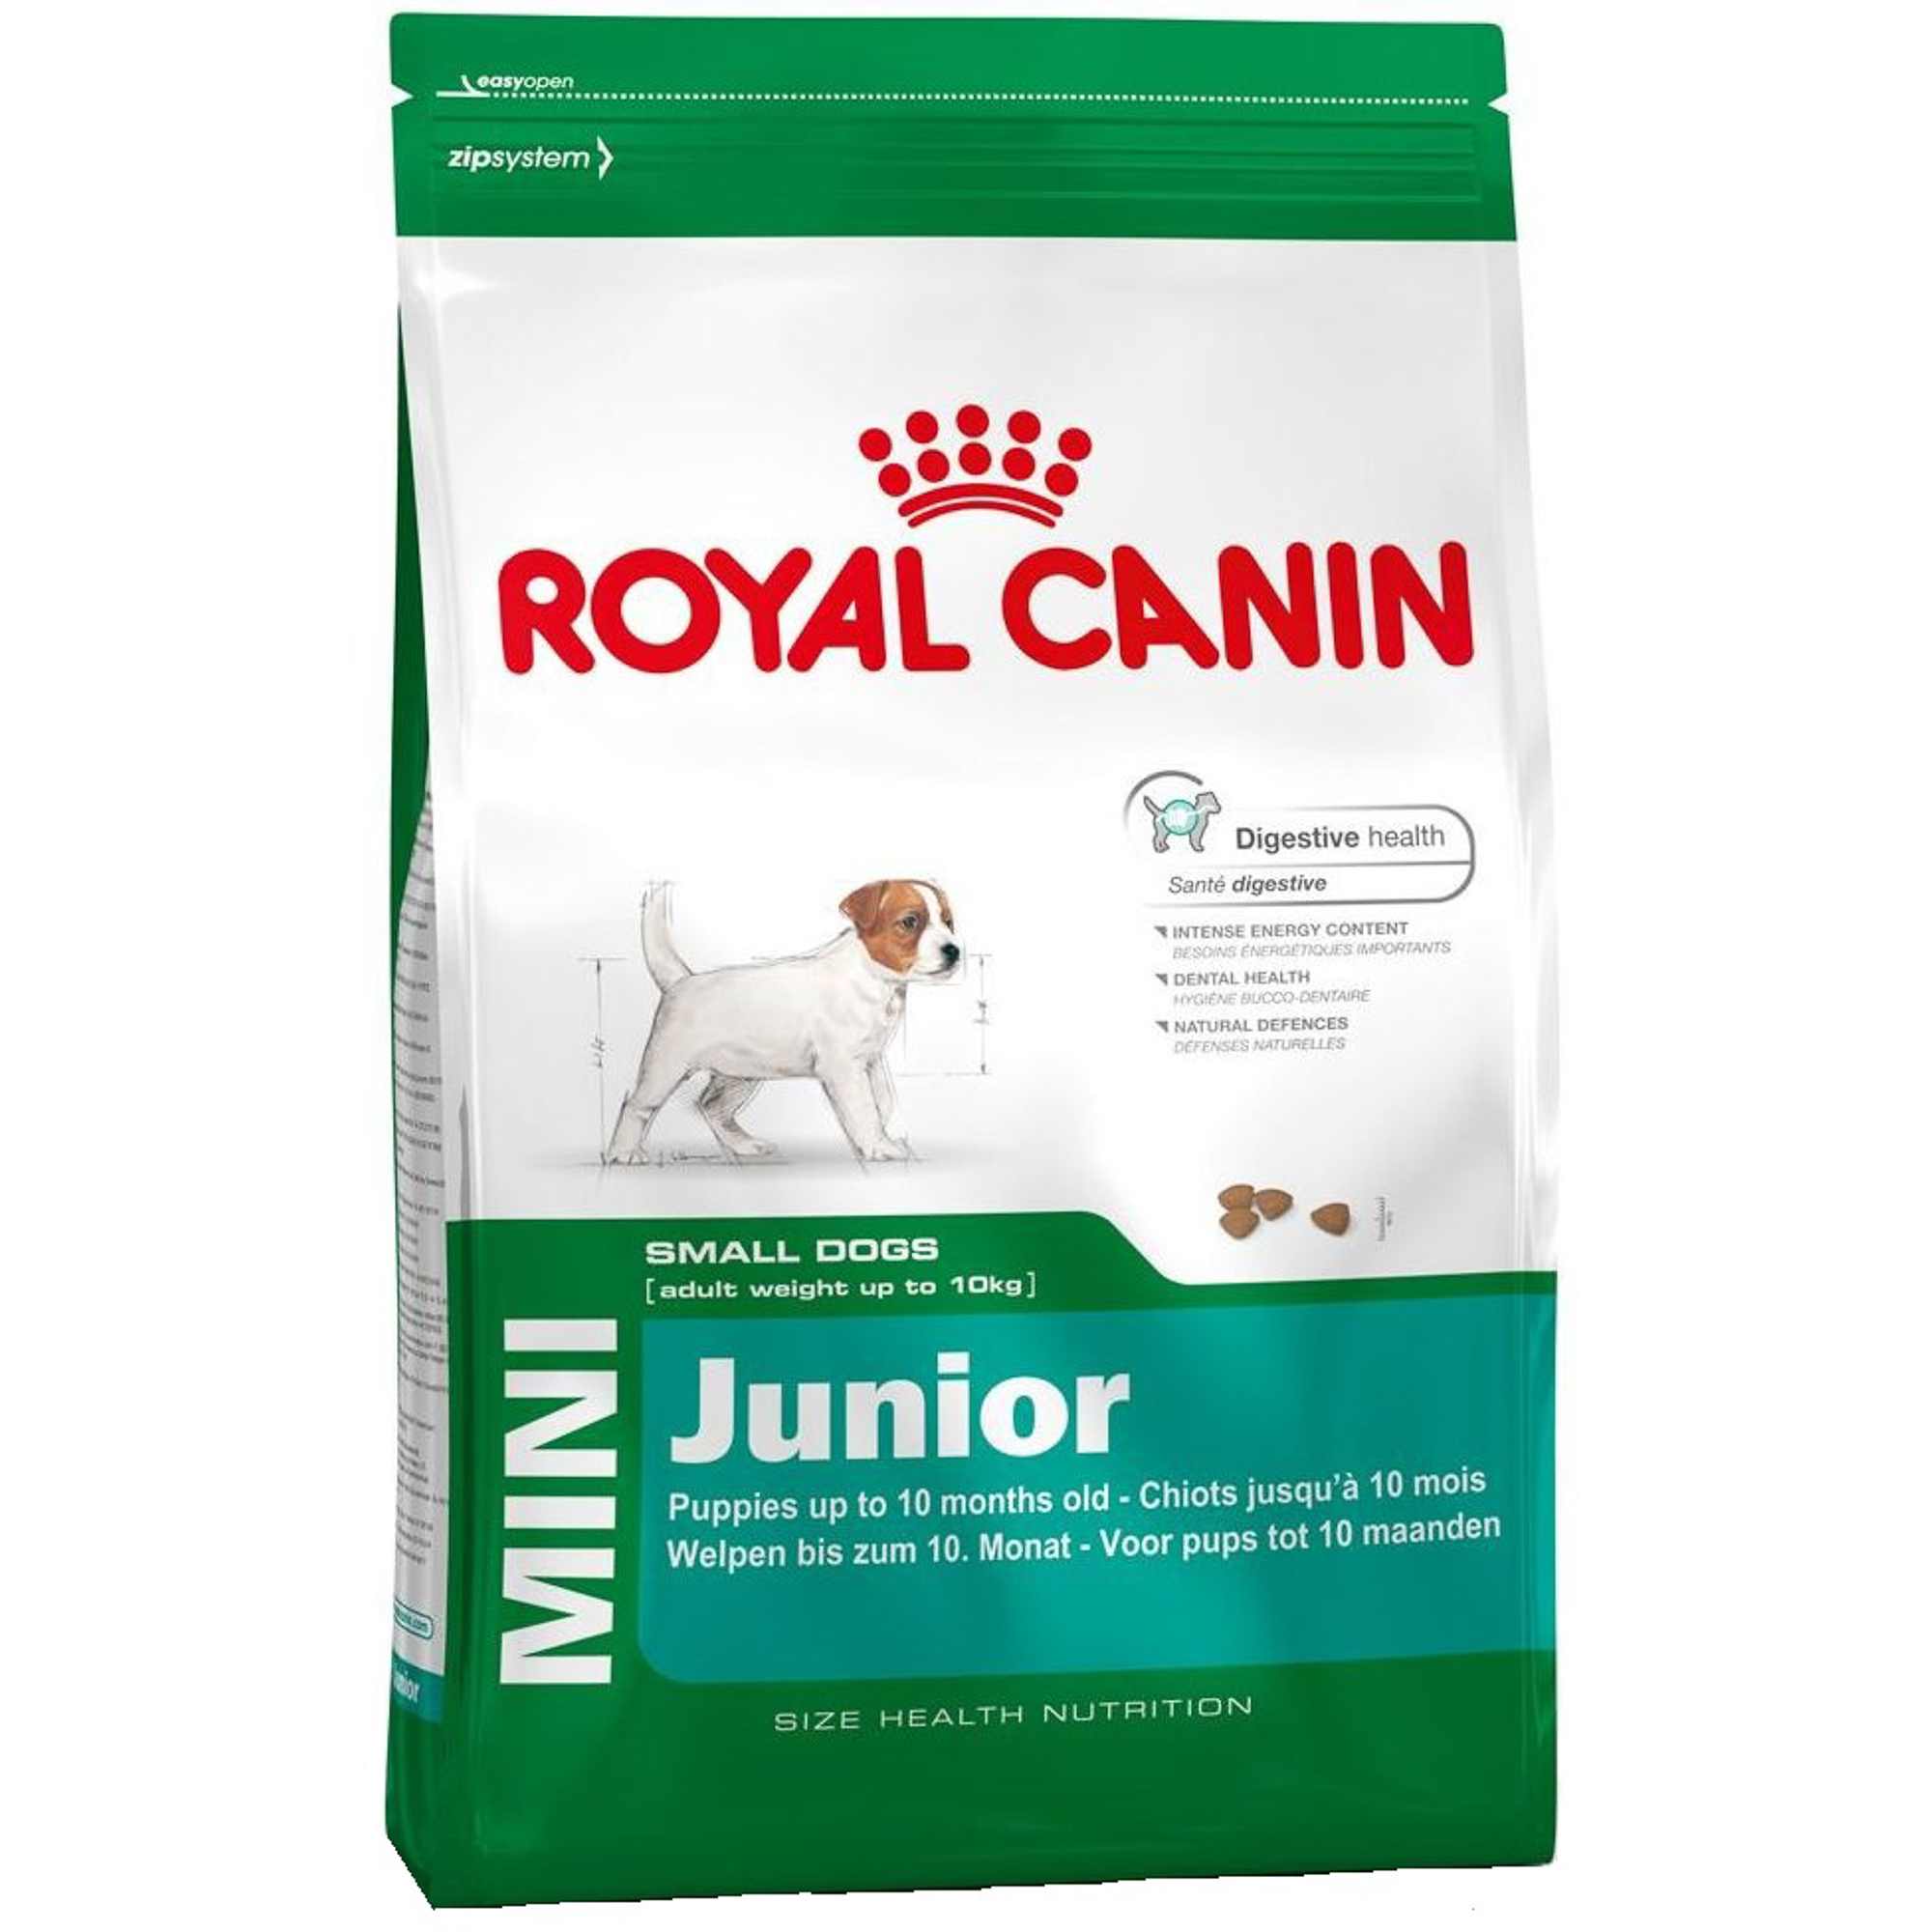 Корм для щенков Royal Canin JUNIOR для мелких пород, с 2 до 10 месяцев, 2 кг